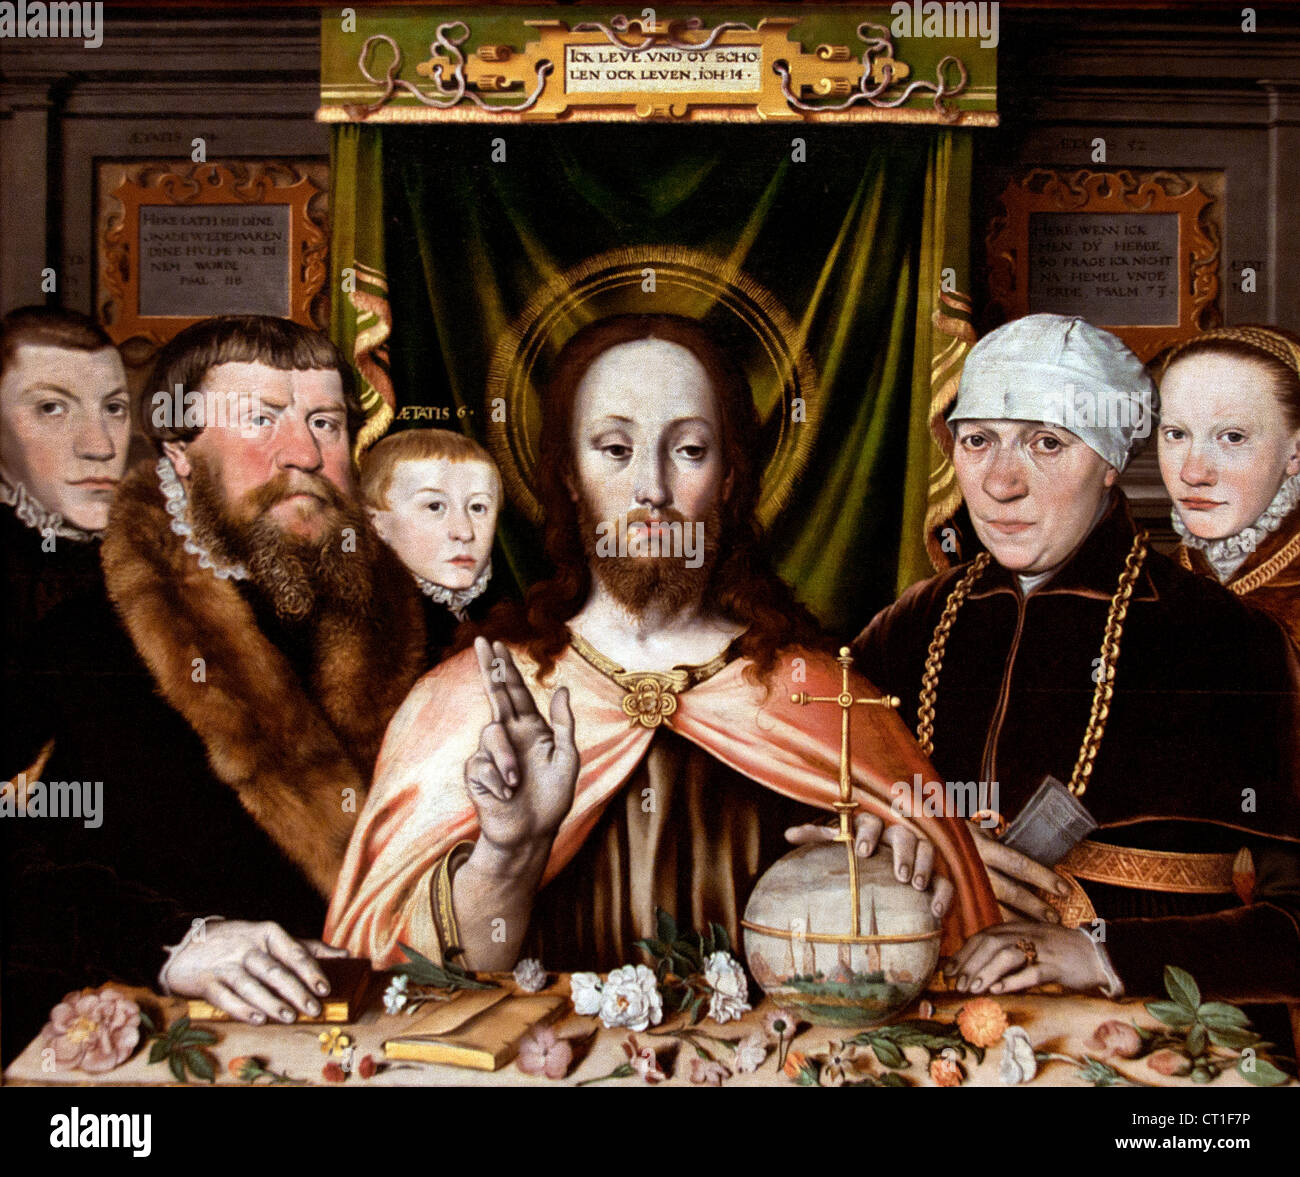 Le Christ bénissant entouré par un donateur et sa famille à propos de peintre allemand Basse-saxe Allemagne 1575 - 80 Banque D'Images